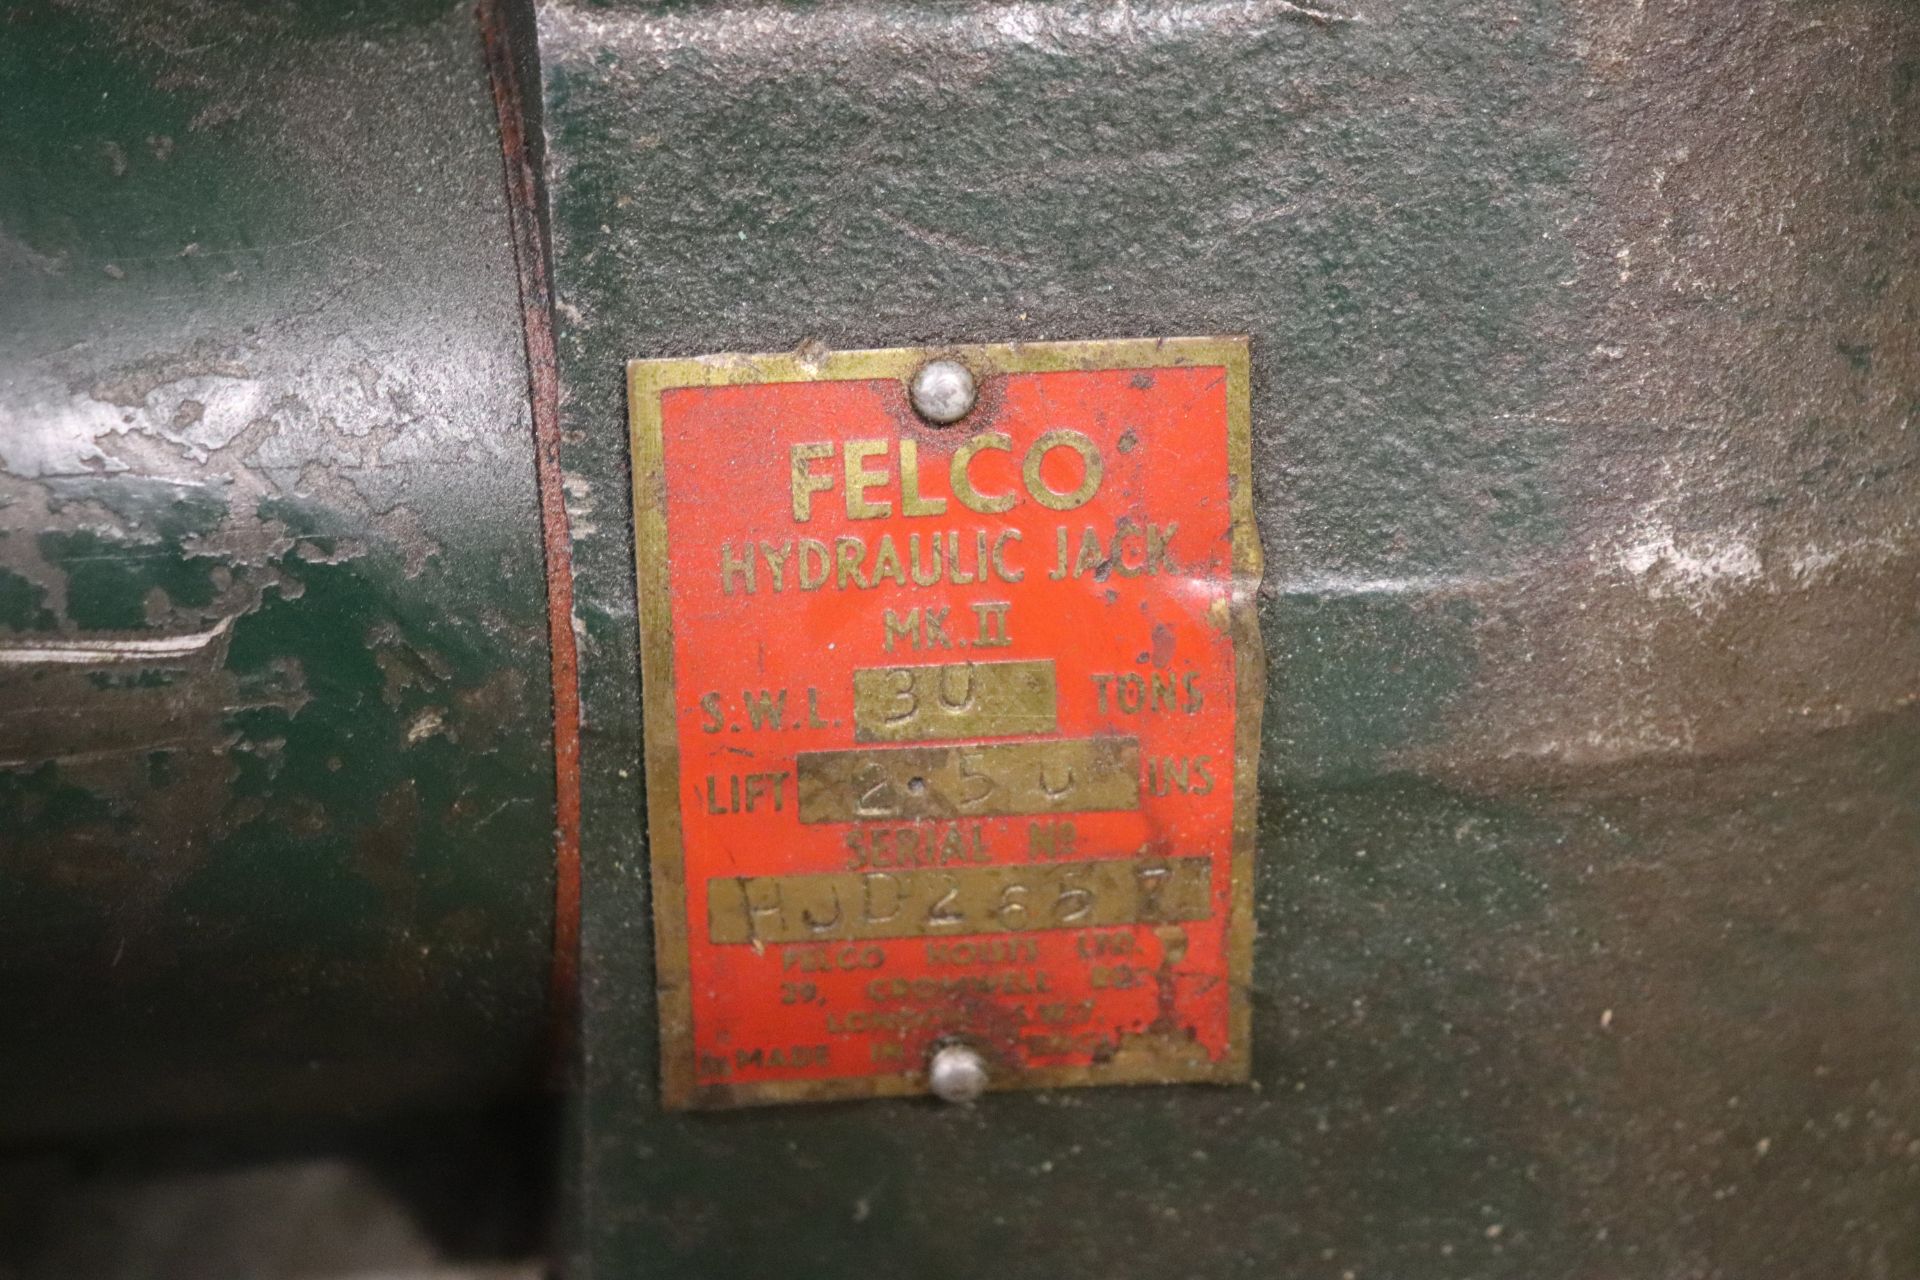 Felco hydraulic jack, 30-ton - Image 2 of 2